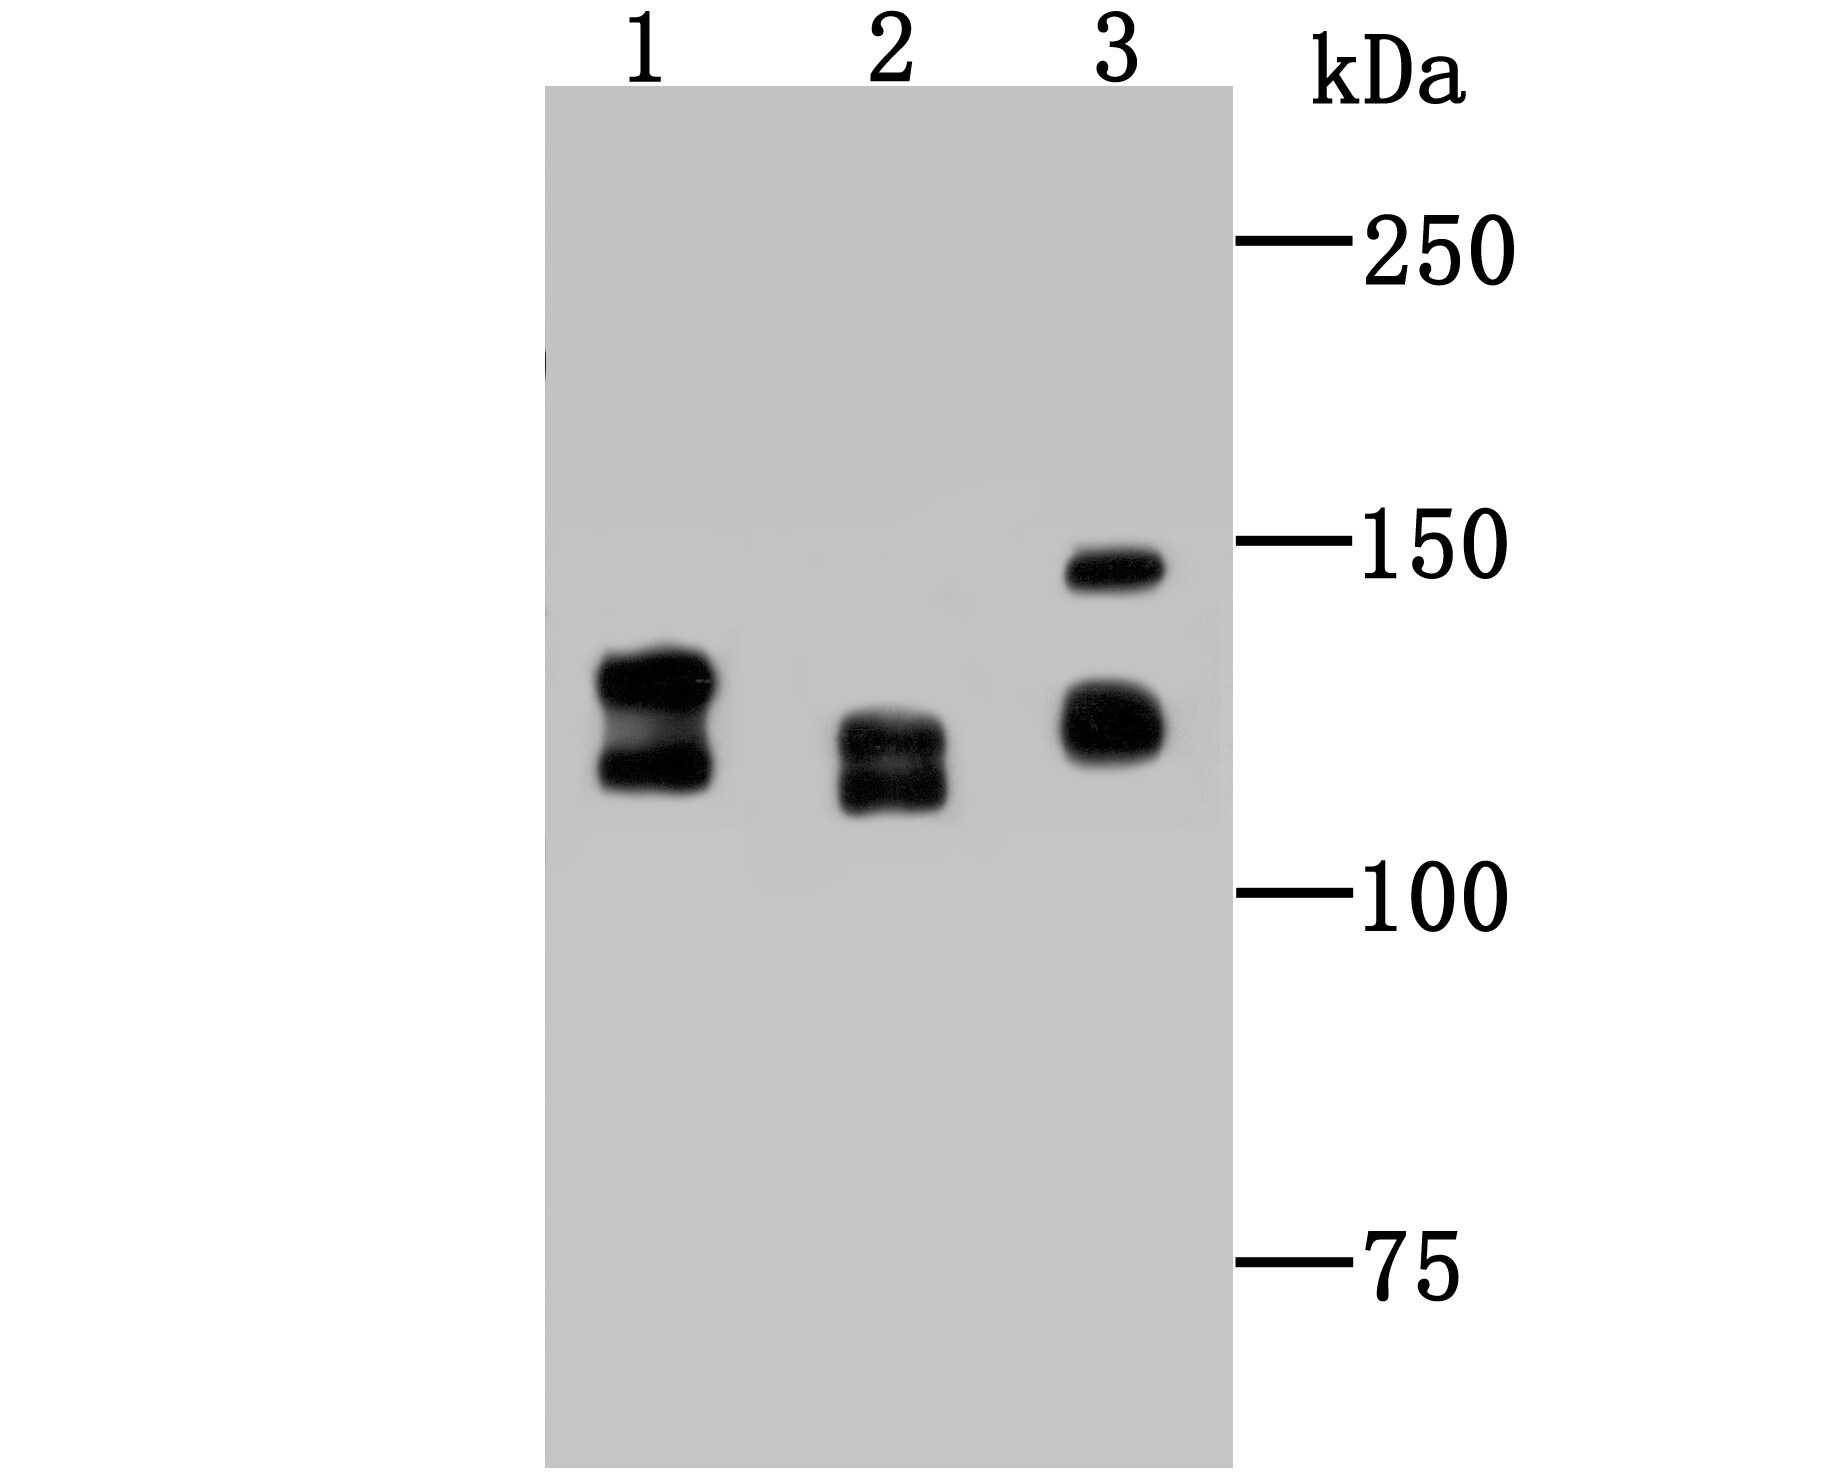 DDB1 Antibody in Western Blot (WB)